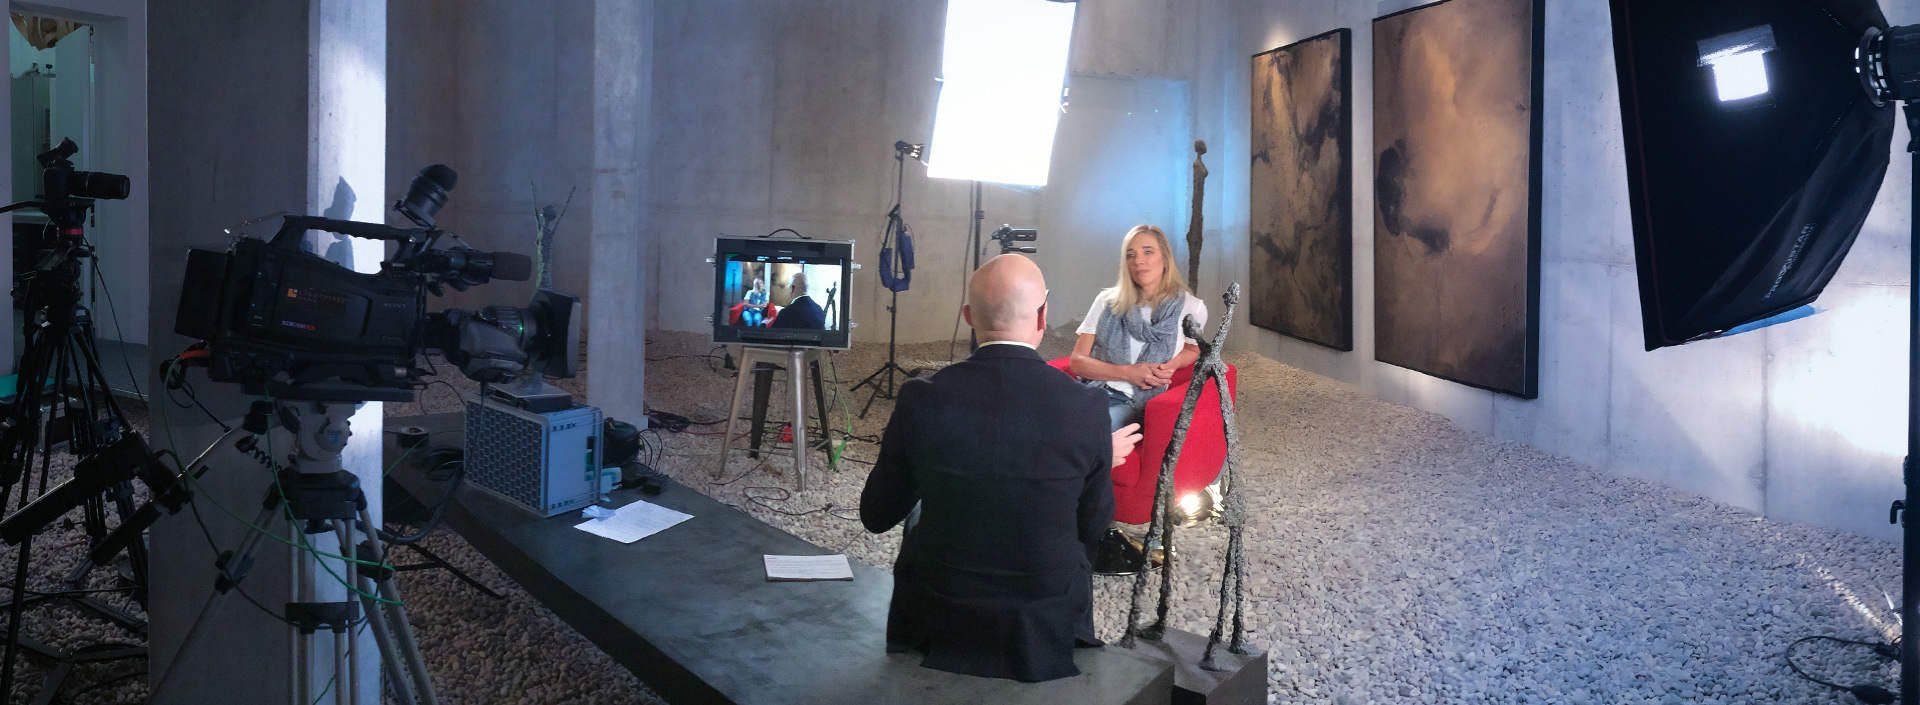 Heidi Sand im Roten Sessel beim Interview mit Filmkameras und Licht in einer Galerie